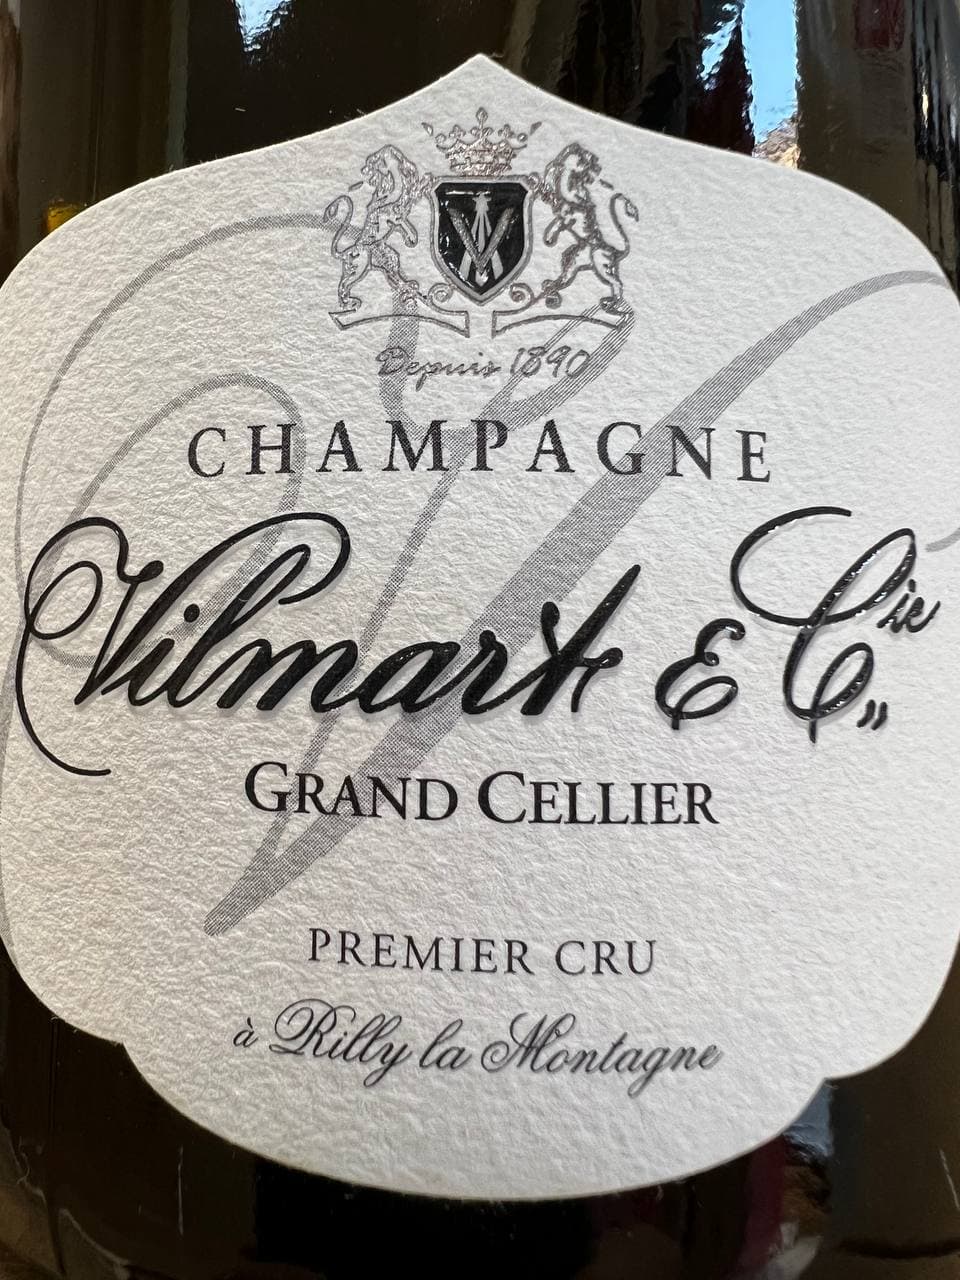 Champagne Brut Premier Cru Vilmart & Cie Grand Cellier